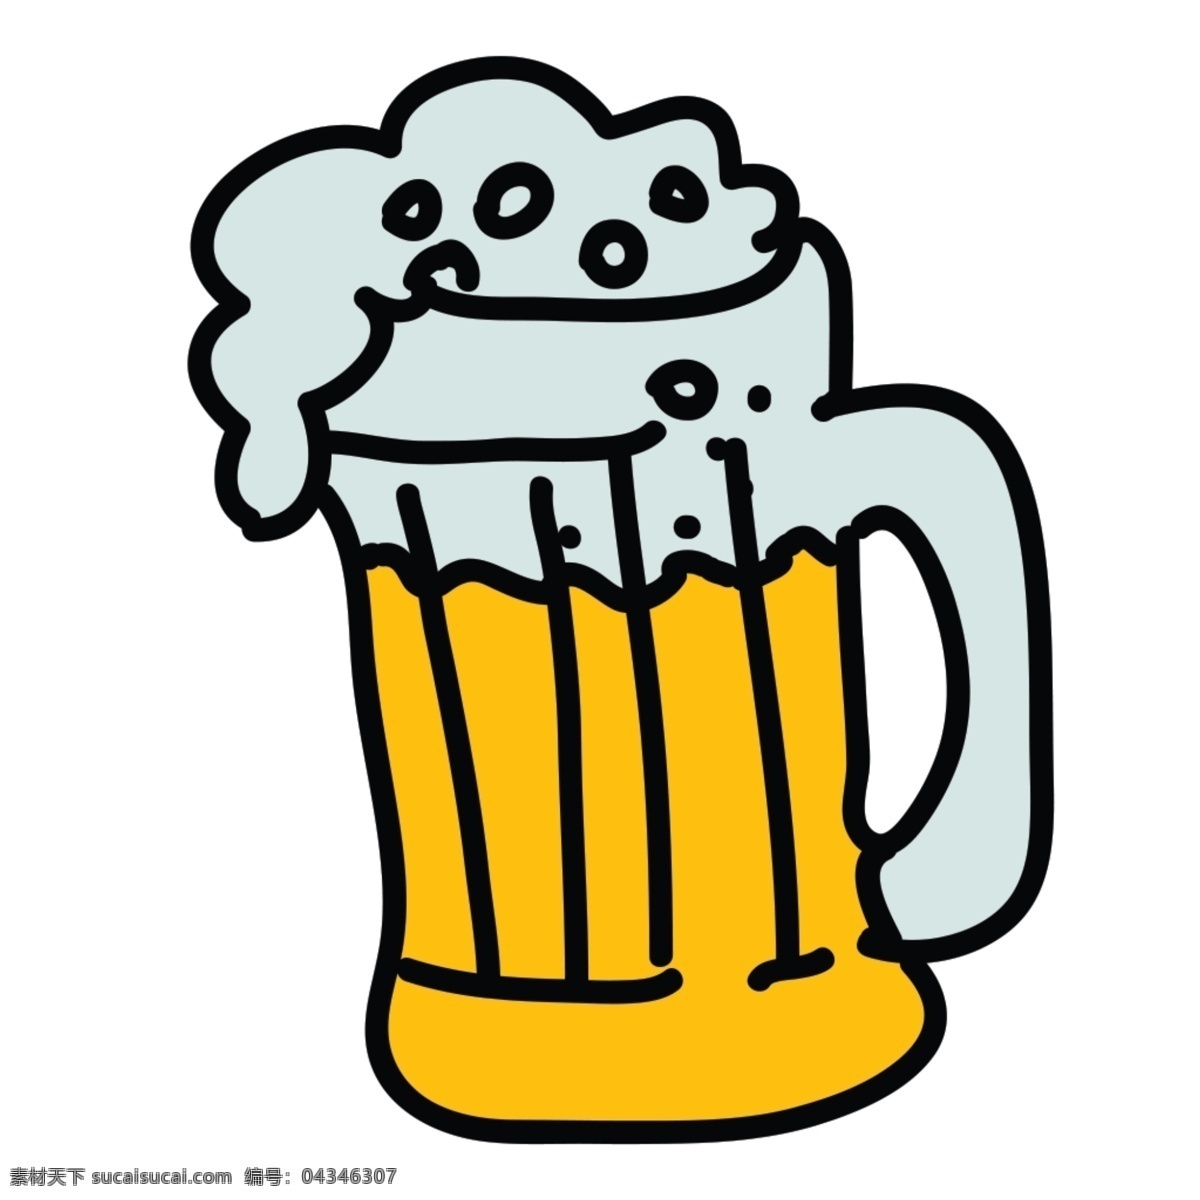 网页 ui 啤酒 icon 图标 图标设计 icon设计 icon图标 网页图标 啤酒图标 啤酒icon 啤酒图标设计 啤酒杯